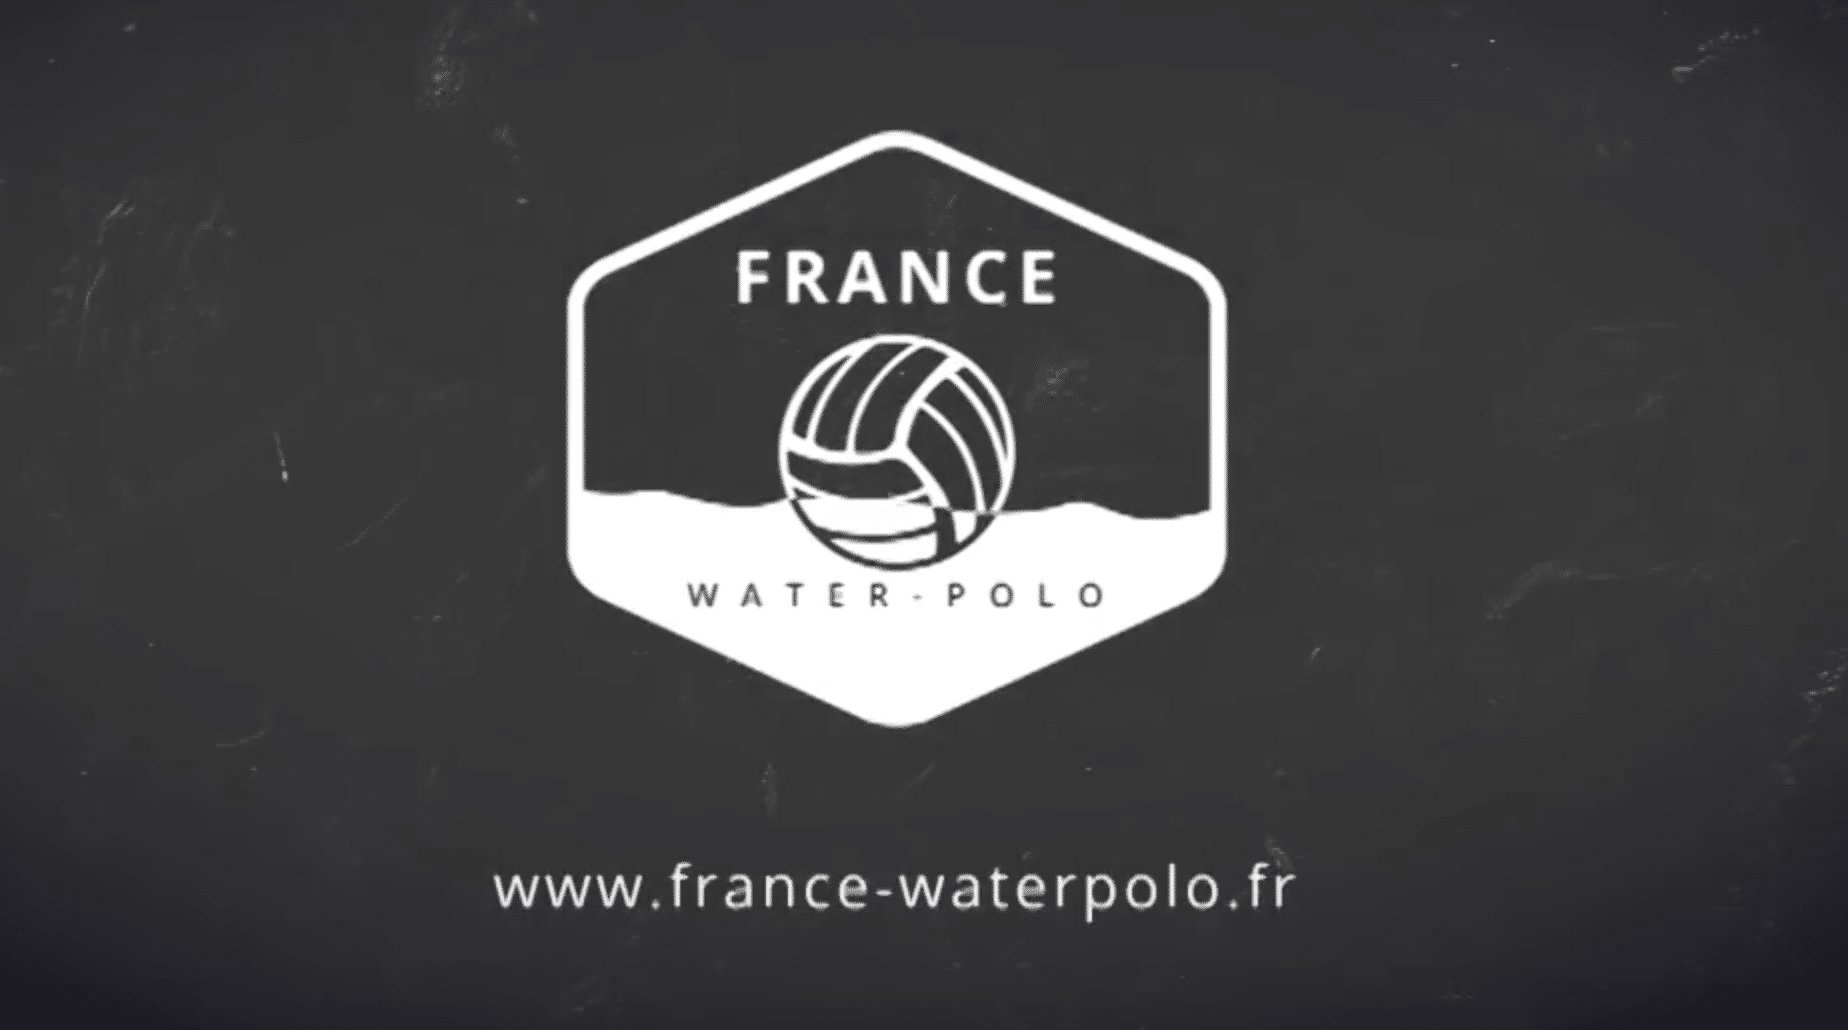 Tarbes Nautic Club water-polo